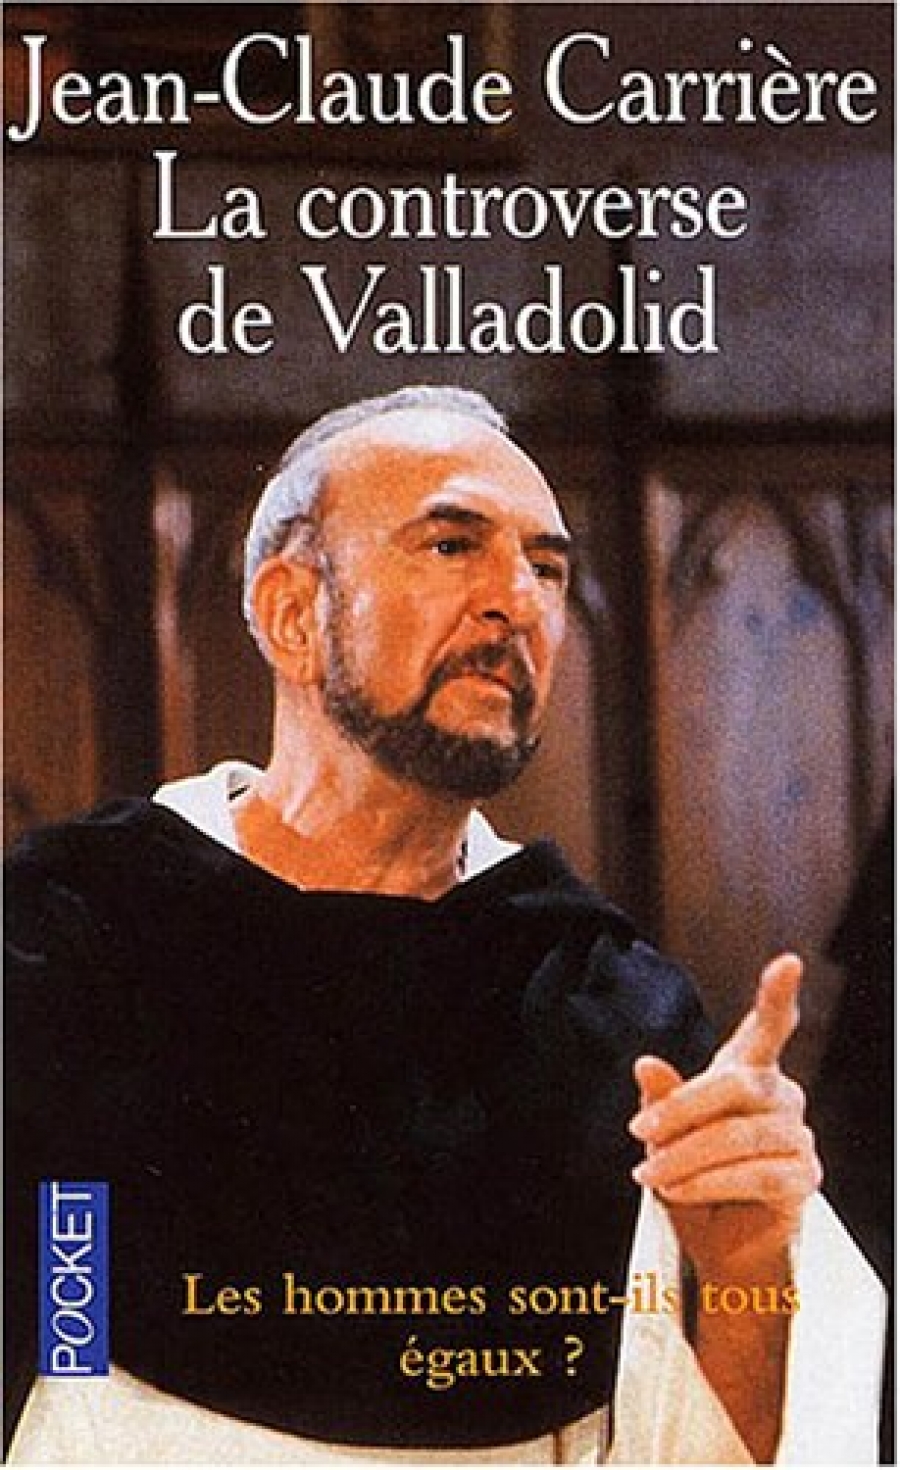 Carriere, Jean-Claude Controverse de Valladolid 